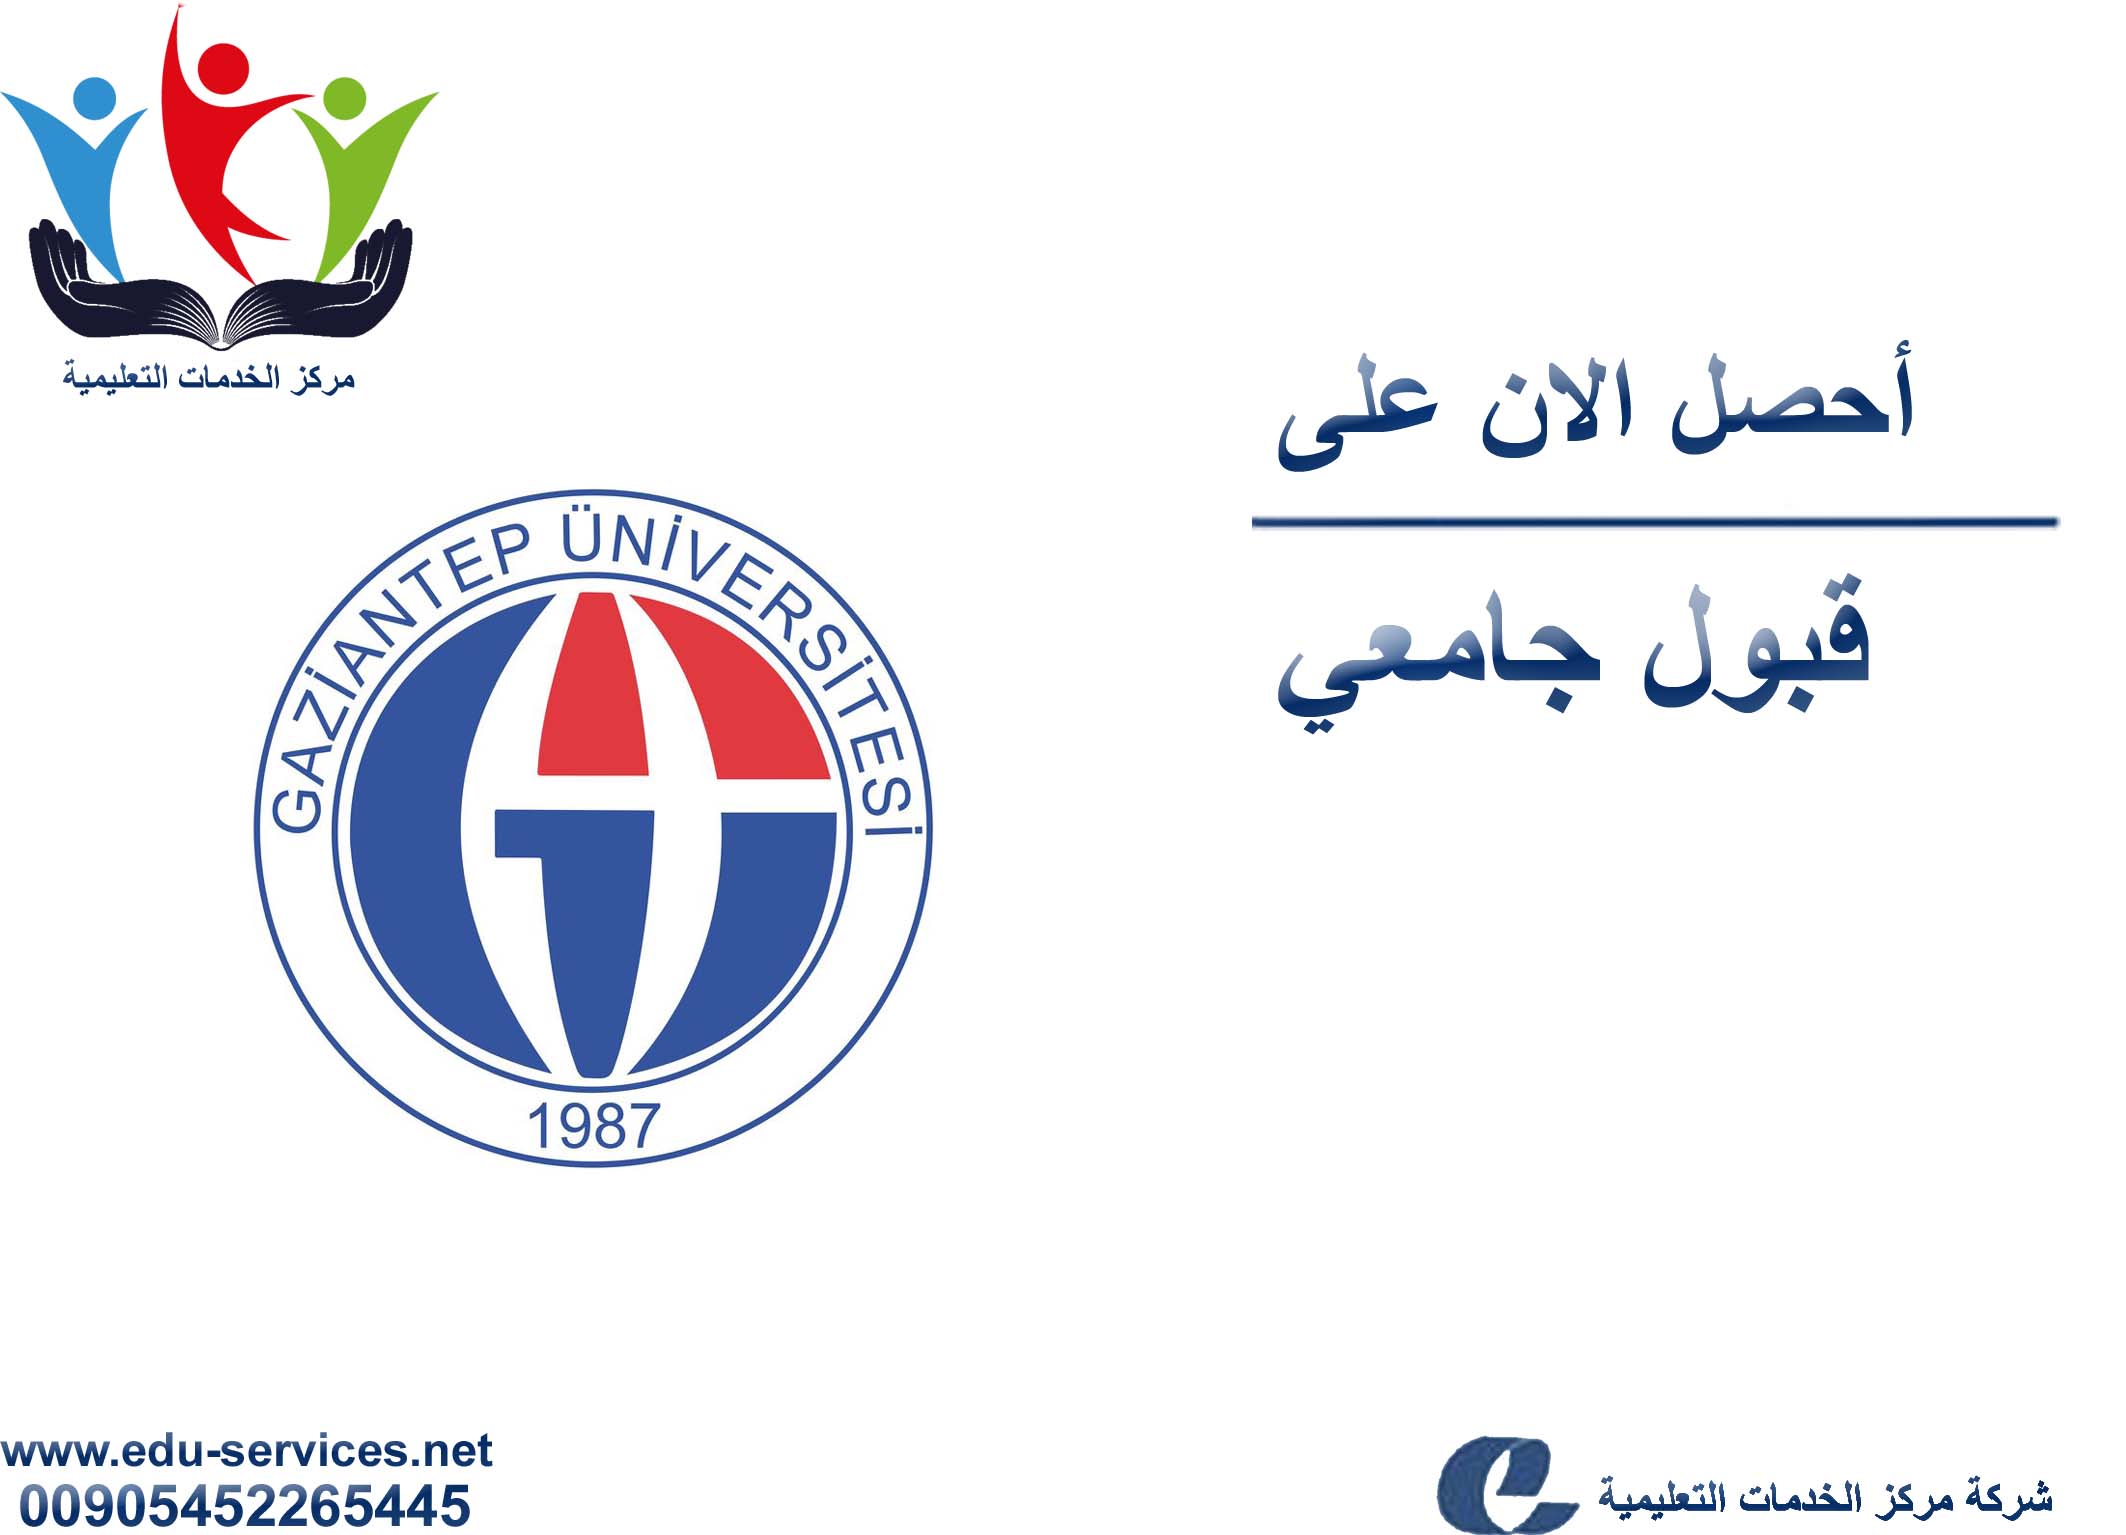 افتتاح التسجيل على جامعة غازي عنتاب للدراسات العليا للفصل الدراسي الثاني 2019/2018